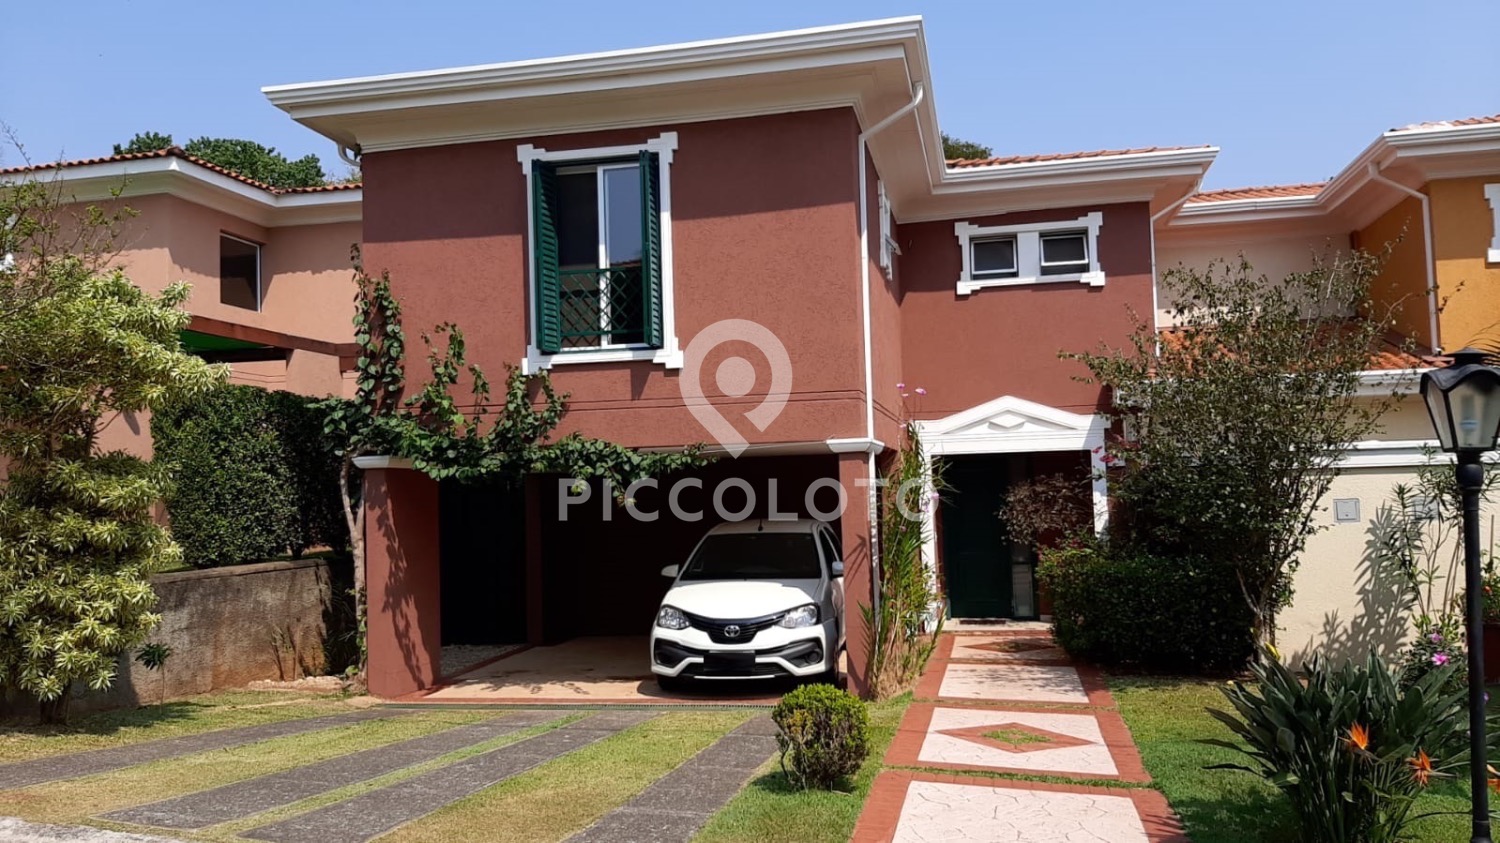 Piccoloto - Casa à venda no Parque Alto Taquaral em Campinas